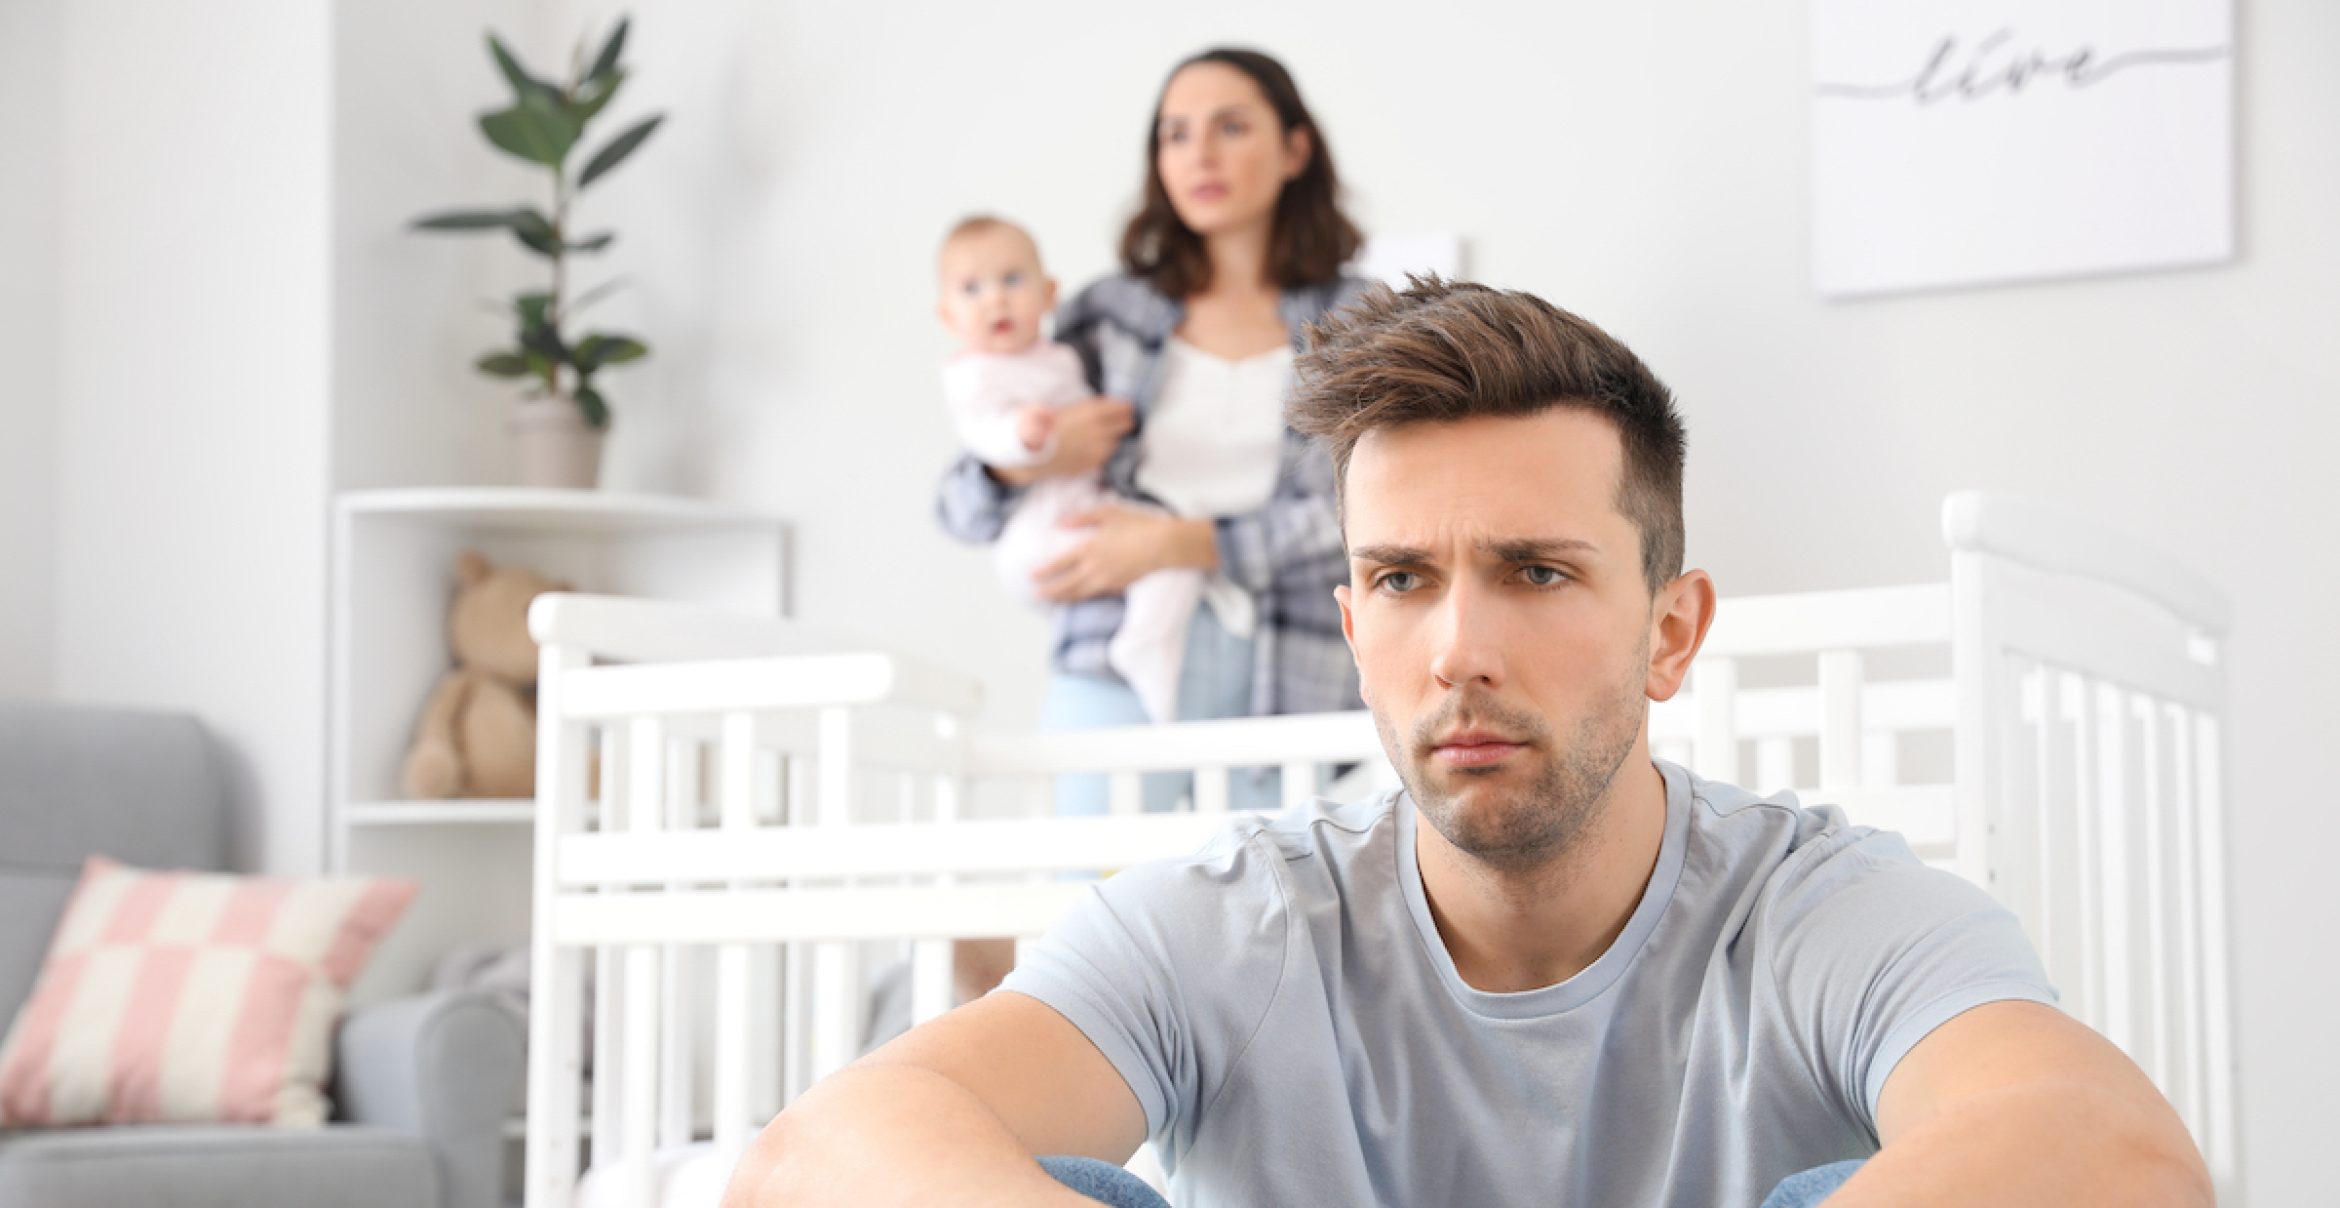 Bei SAP gibt’s jetzt doch keine 6 Wochen Vaterschaftsurlaub